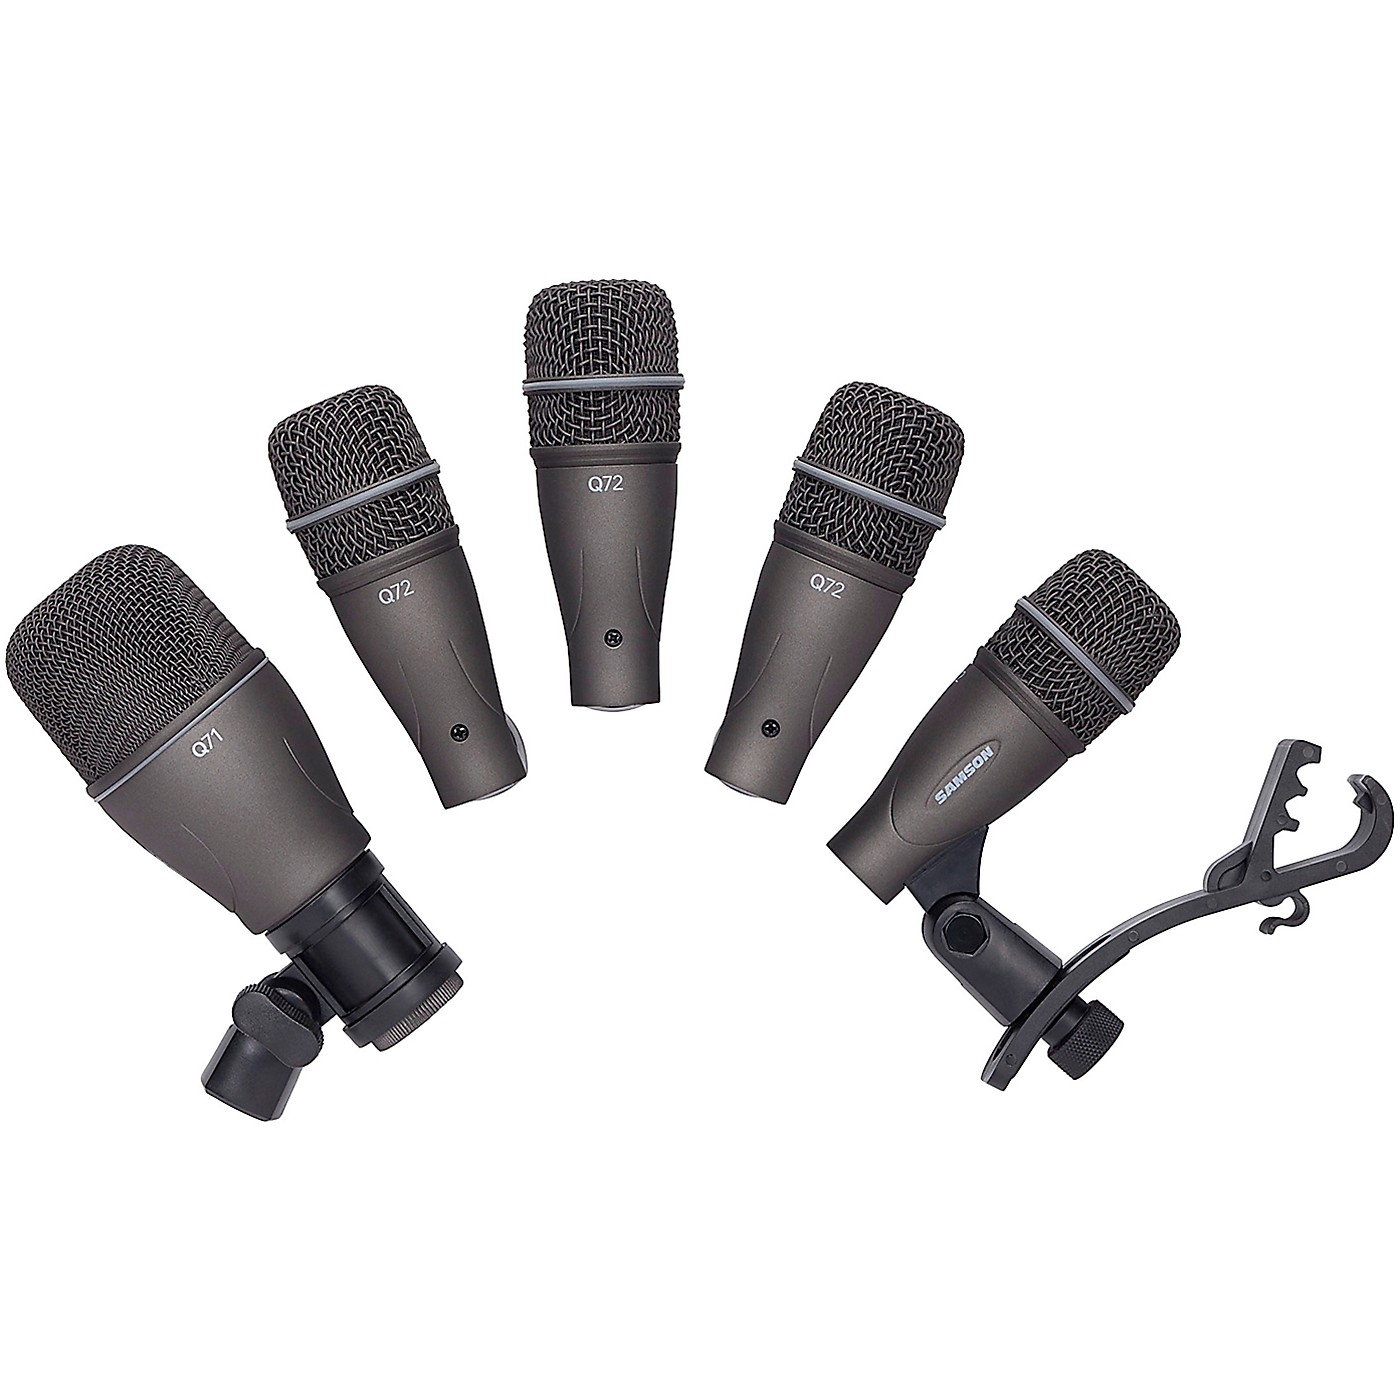 Samson DK 705 Drum Mic 5-Kit: (1) Q71 kick mic (4) Q72 Snare/Tom mics and swivel mounts thumbnail